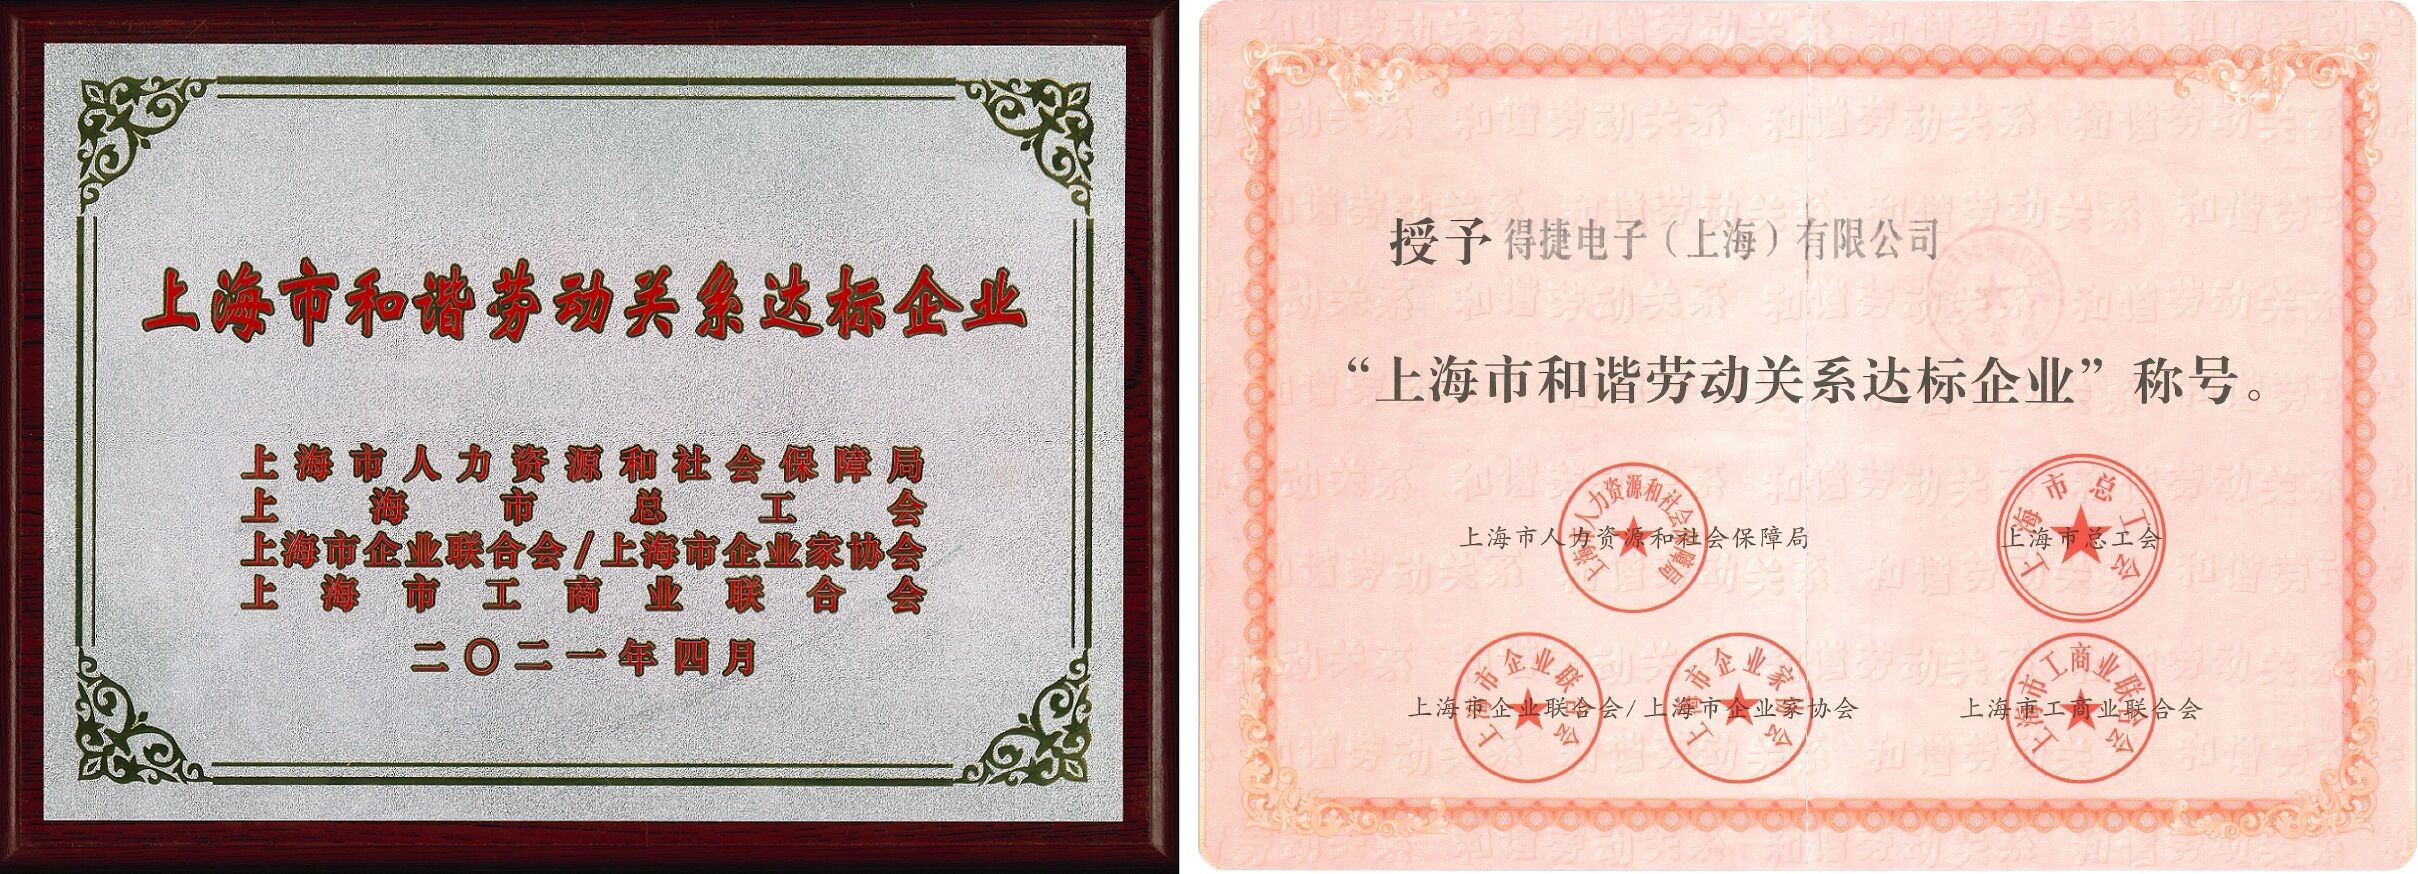 得捷电子（上海）被授予 “上海市和谐劳动关系达标企业” 称号